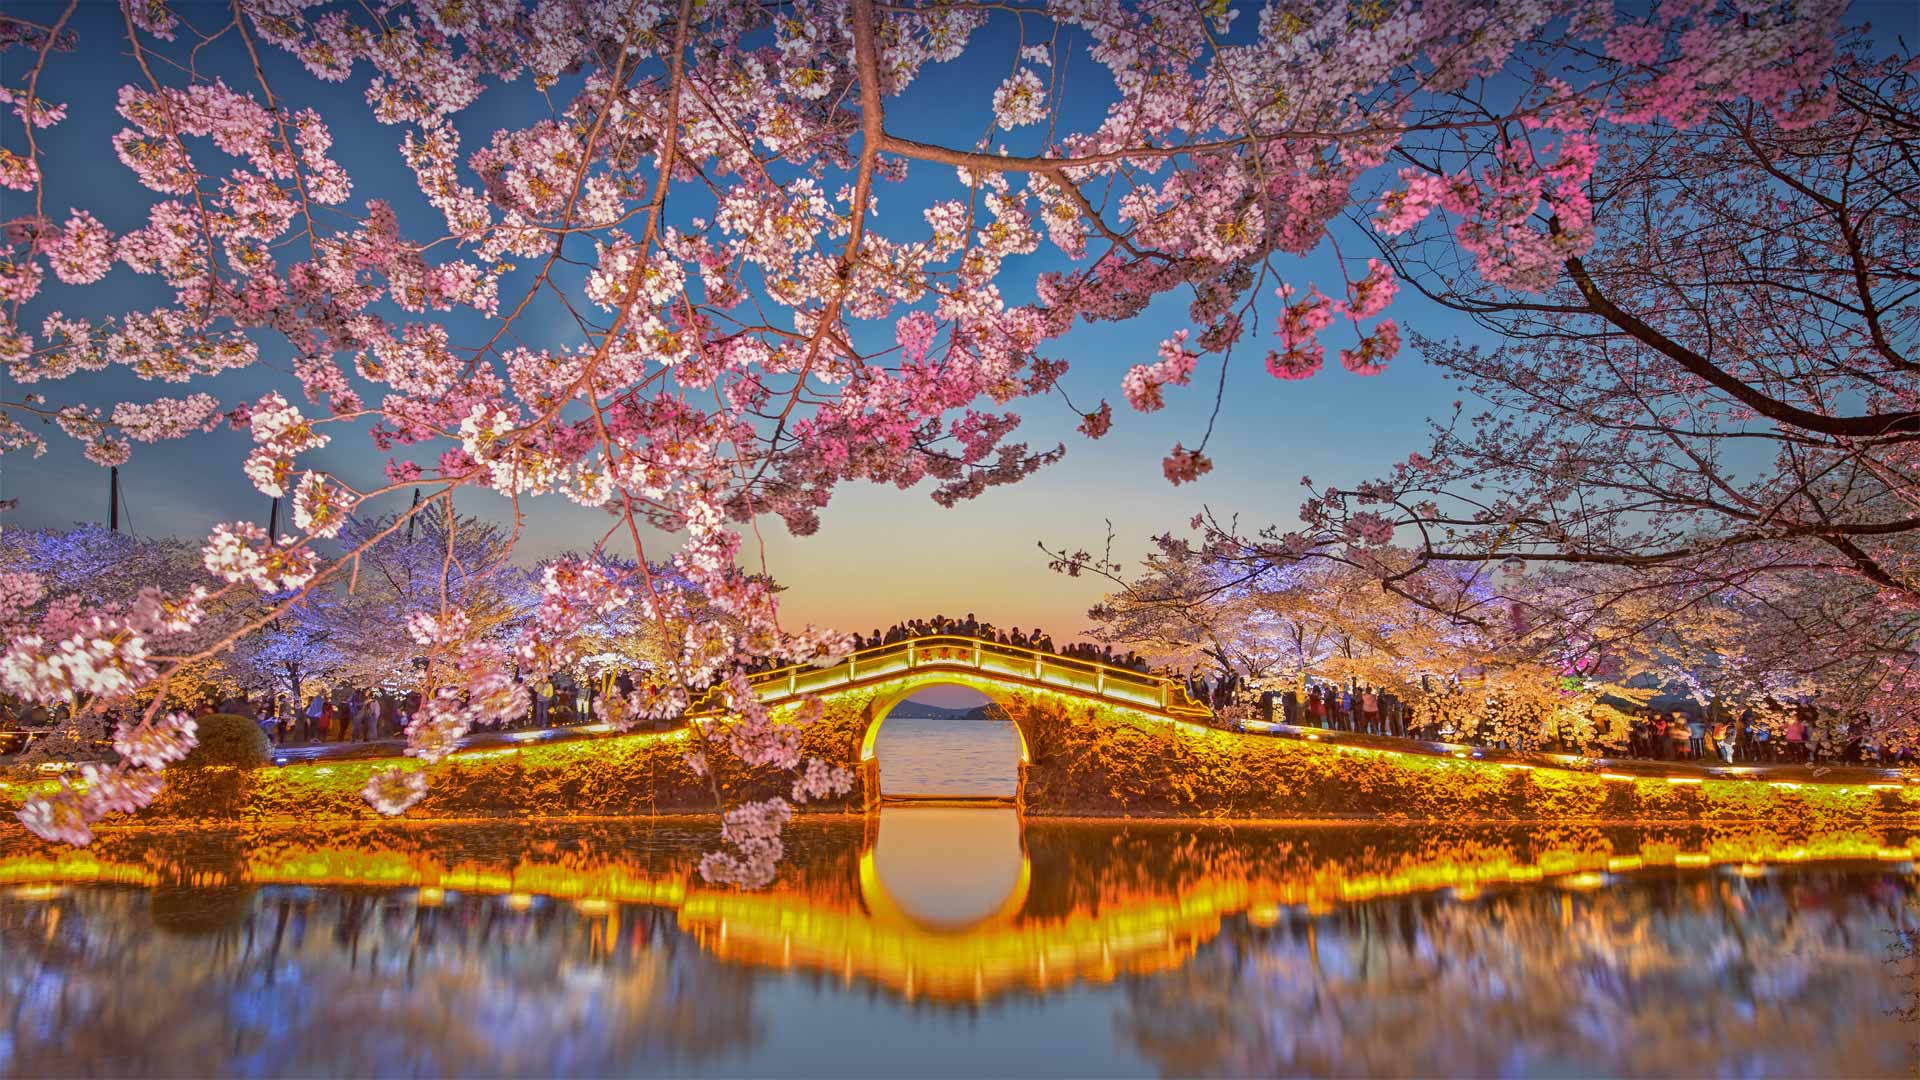 Cherry blossoms at Lake Tai at Wuxi, China Eric Yang/Getty Images